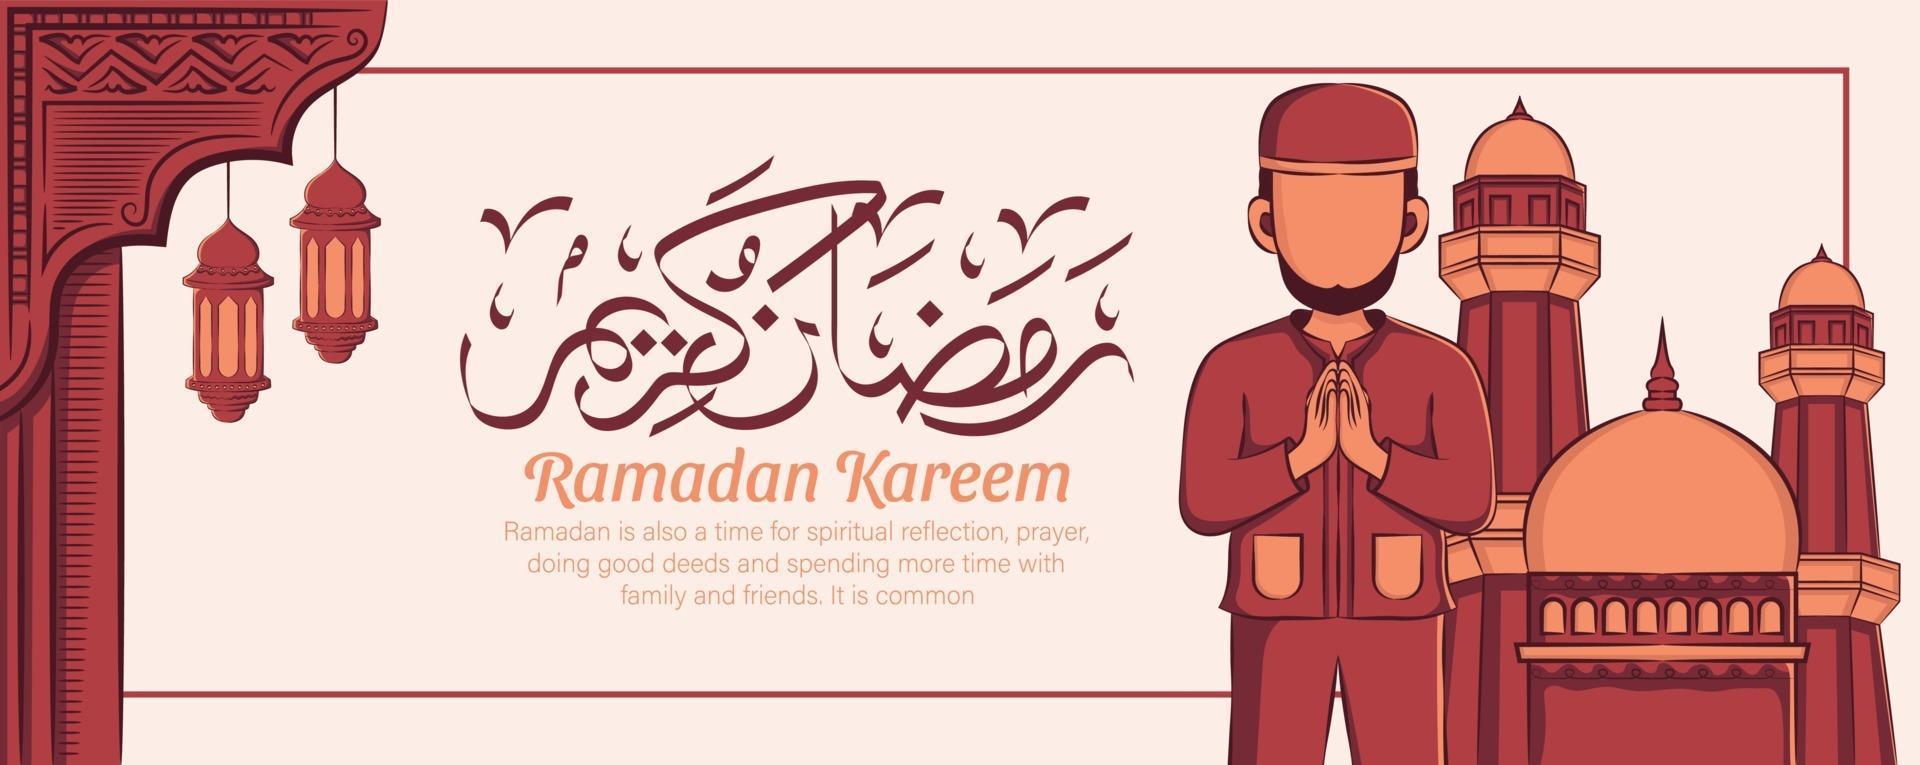 illustration dessinée à la main de la célébration de la fête du ramadan kareem iftar. mois sacré islamique 1442 h. vecteur